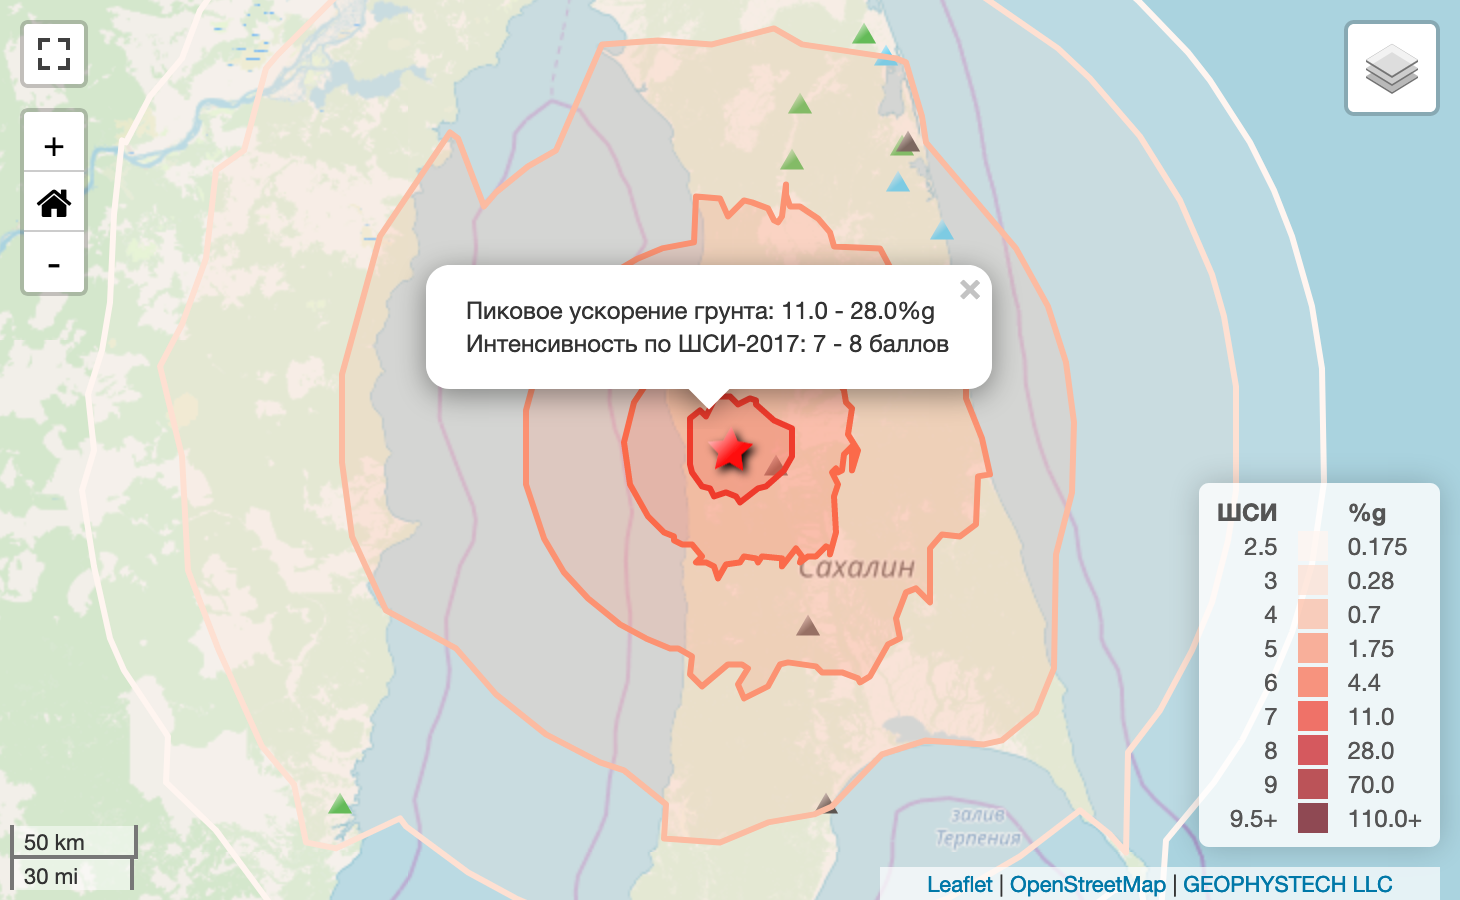 Землетрясение M6.1 на Севере Сахалина 
https://eqalert.ru/#/events/QgpAn7OW 